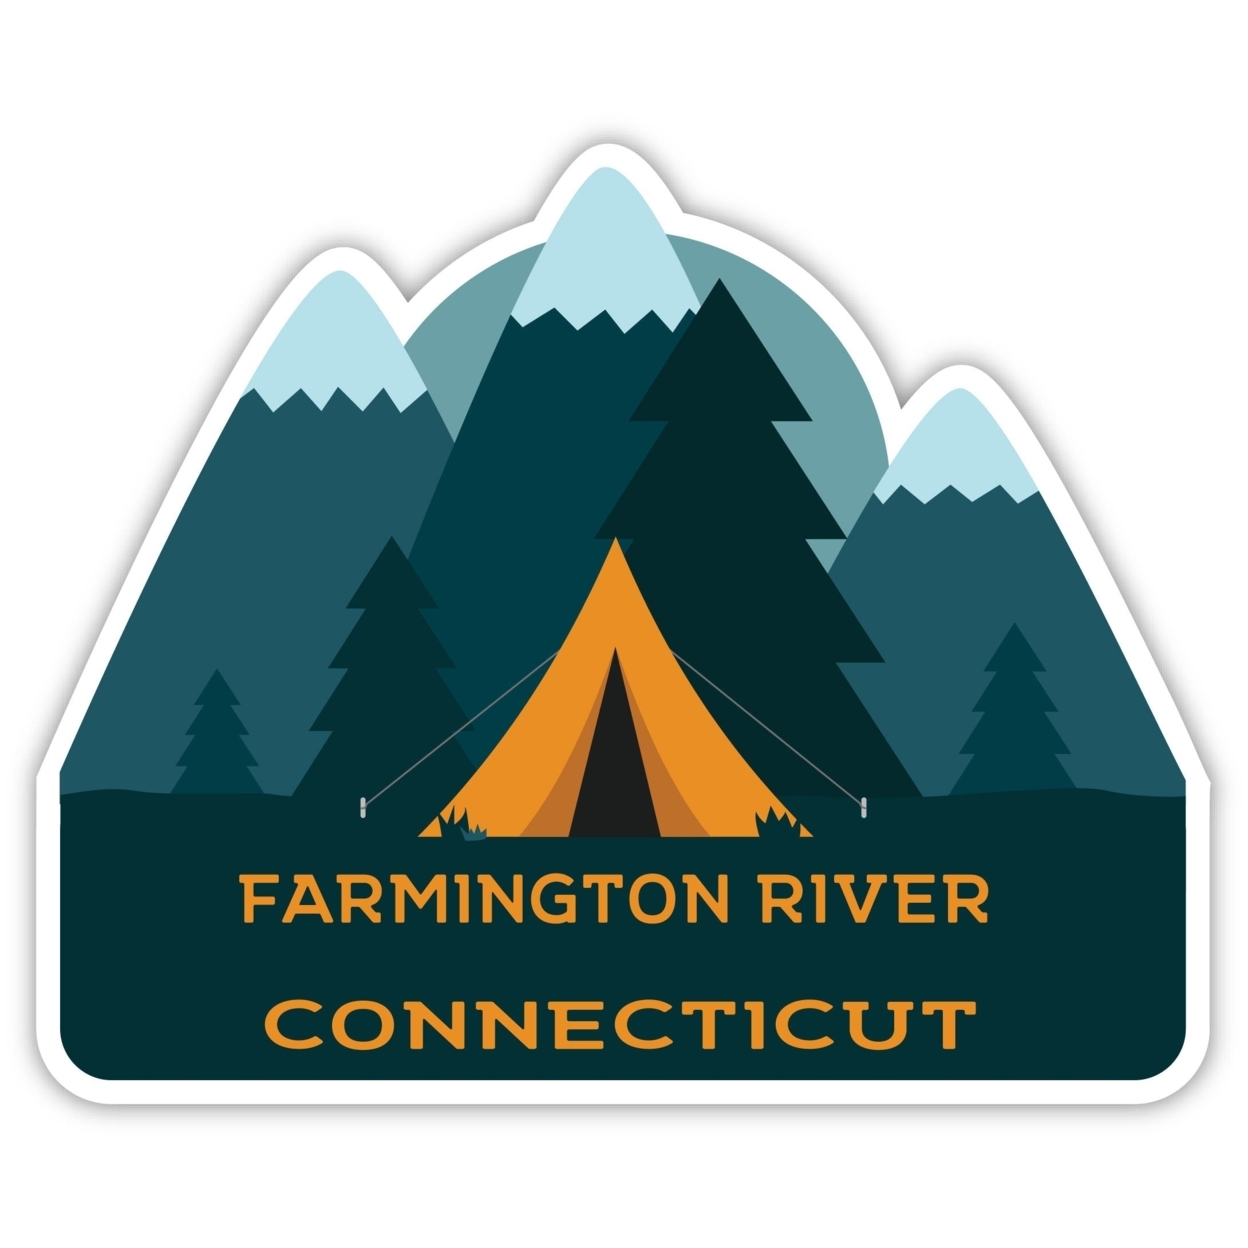 Farmington River Connecticut Souvenir Decorative Stickers (Choose Theme And Size) - 4-Pack, 4-Inch, Tent